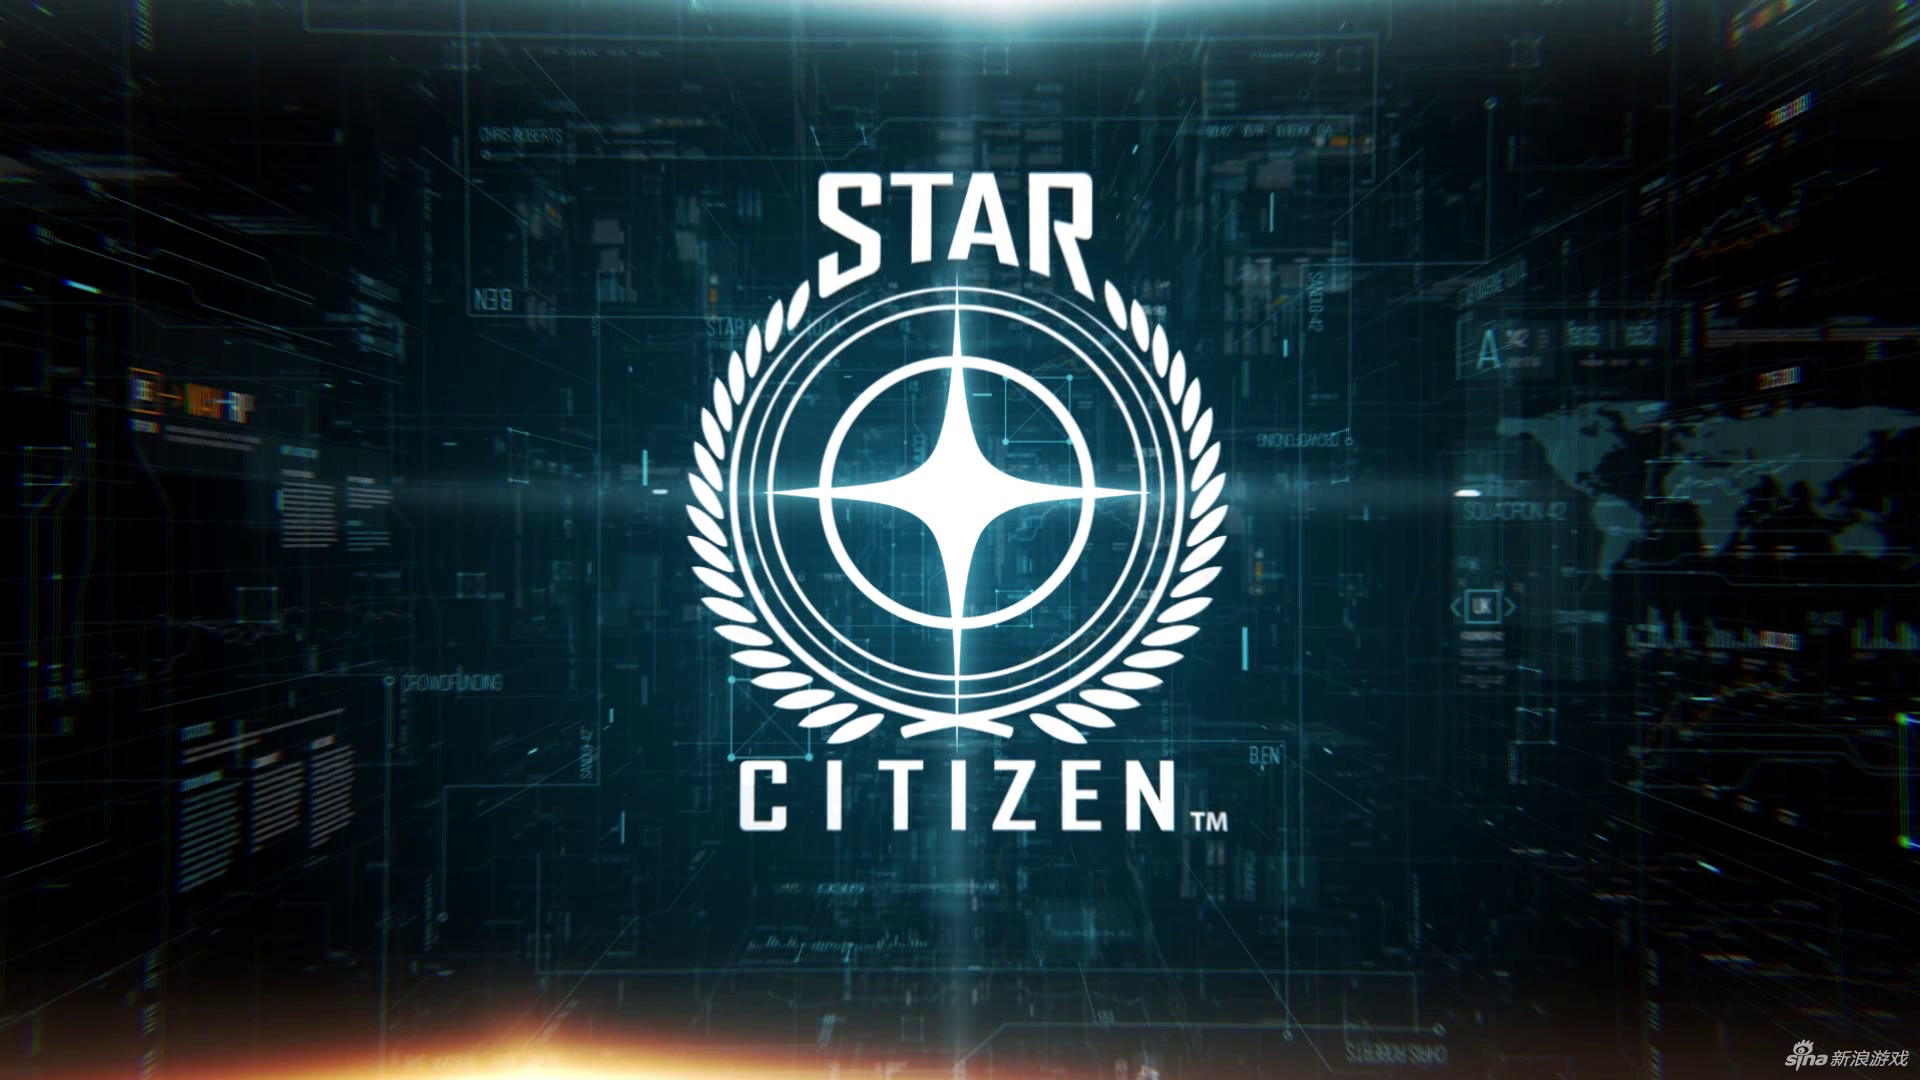 《星际公民》公布最新截图 4.0版将于2017年推出